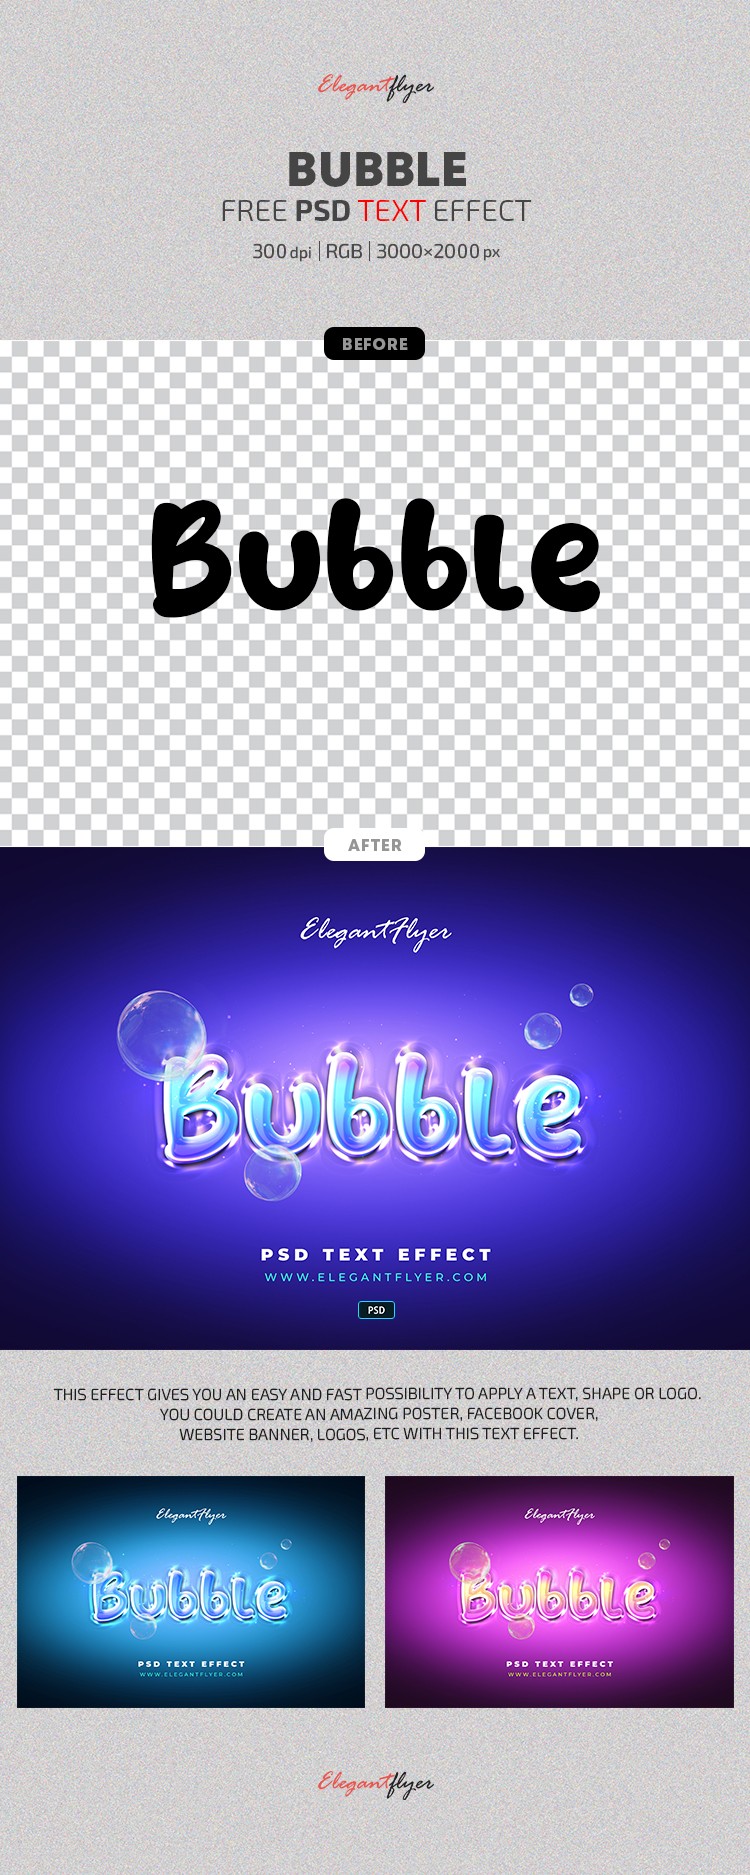 Bubble Text Effect by ElegantFlyer